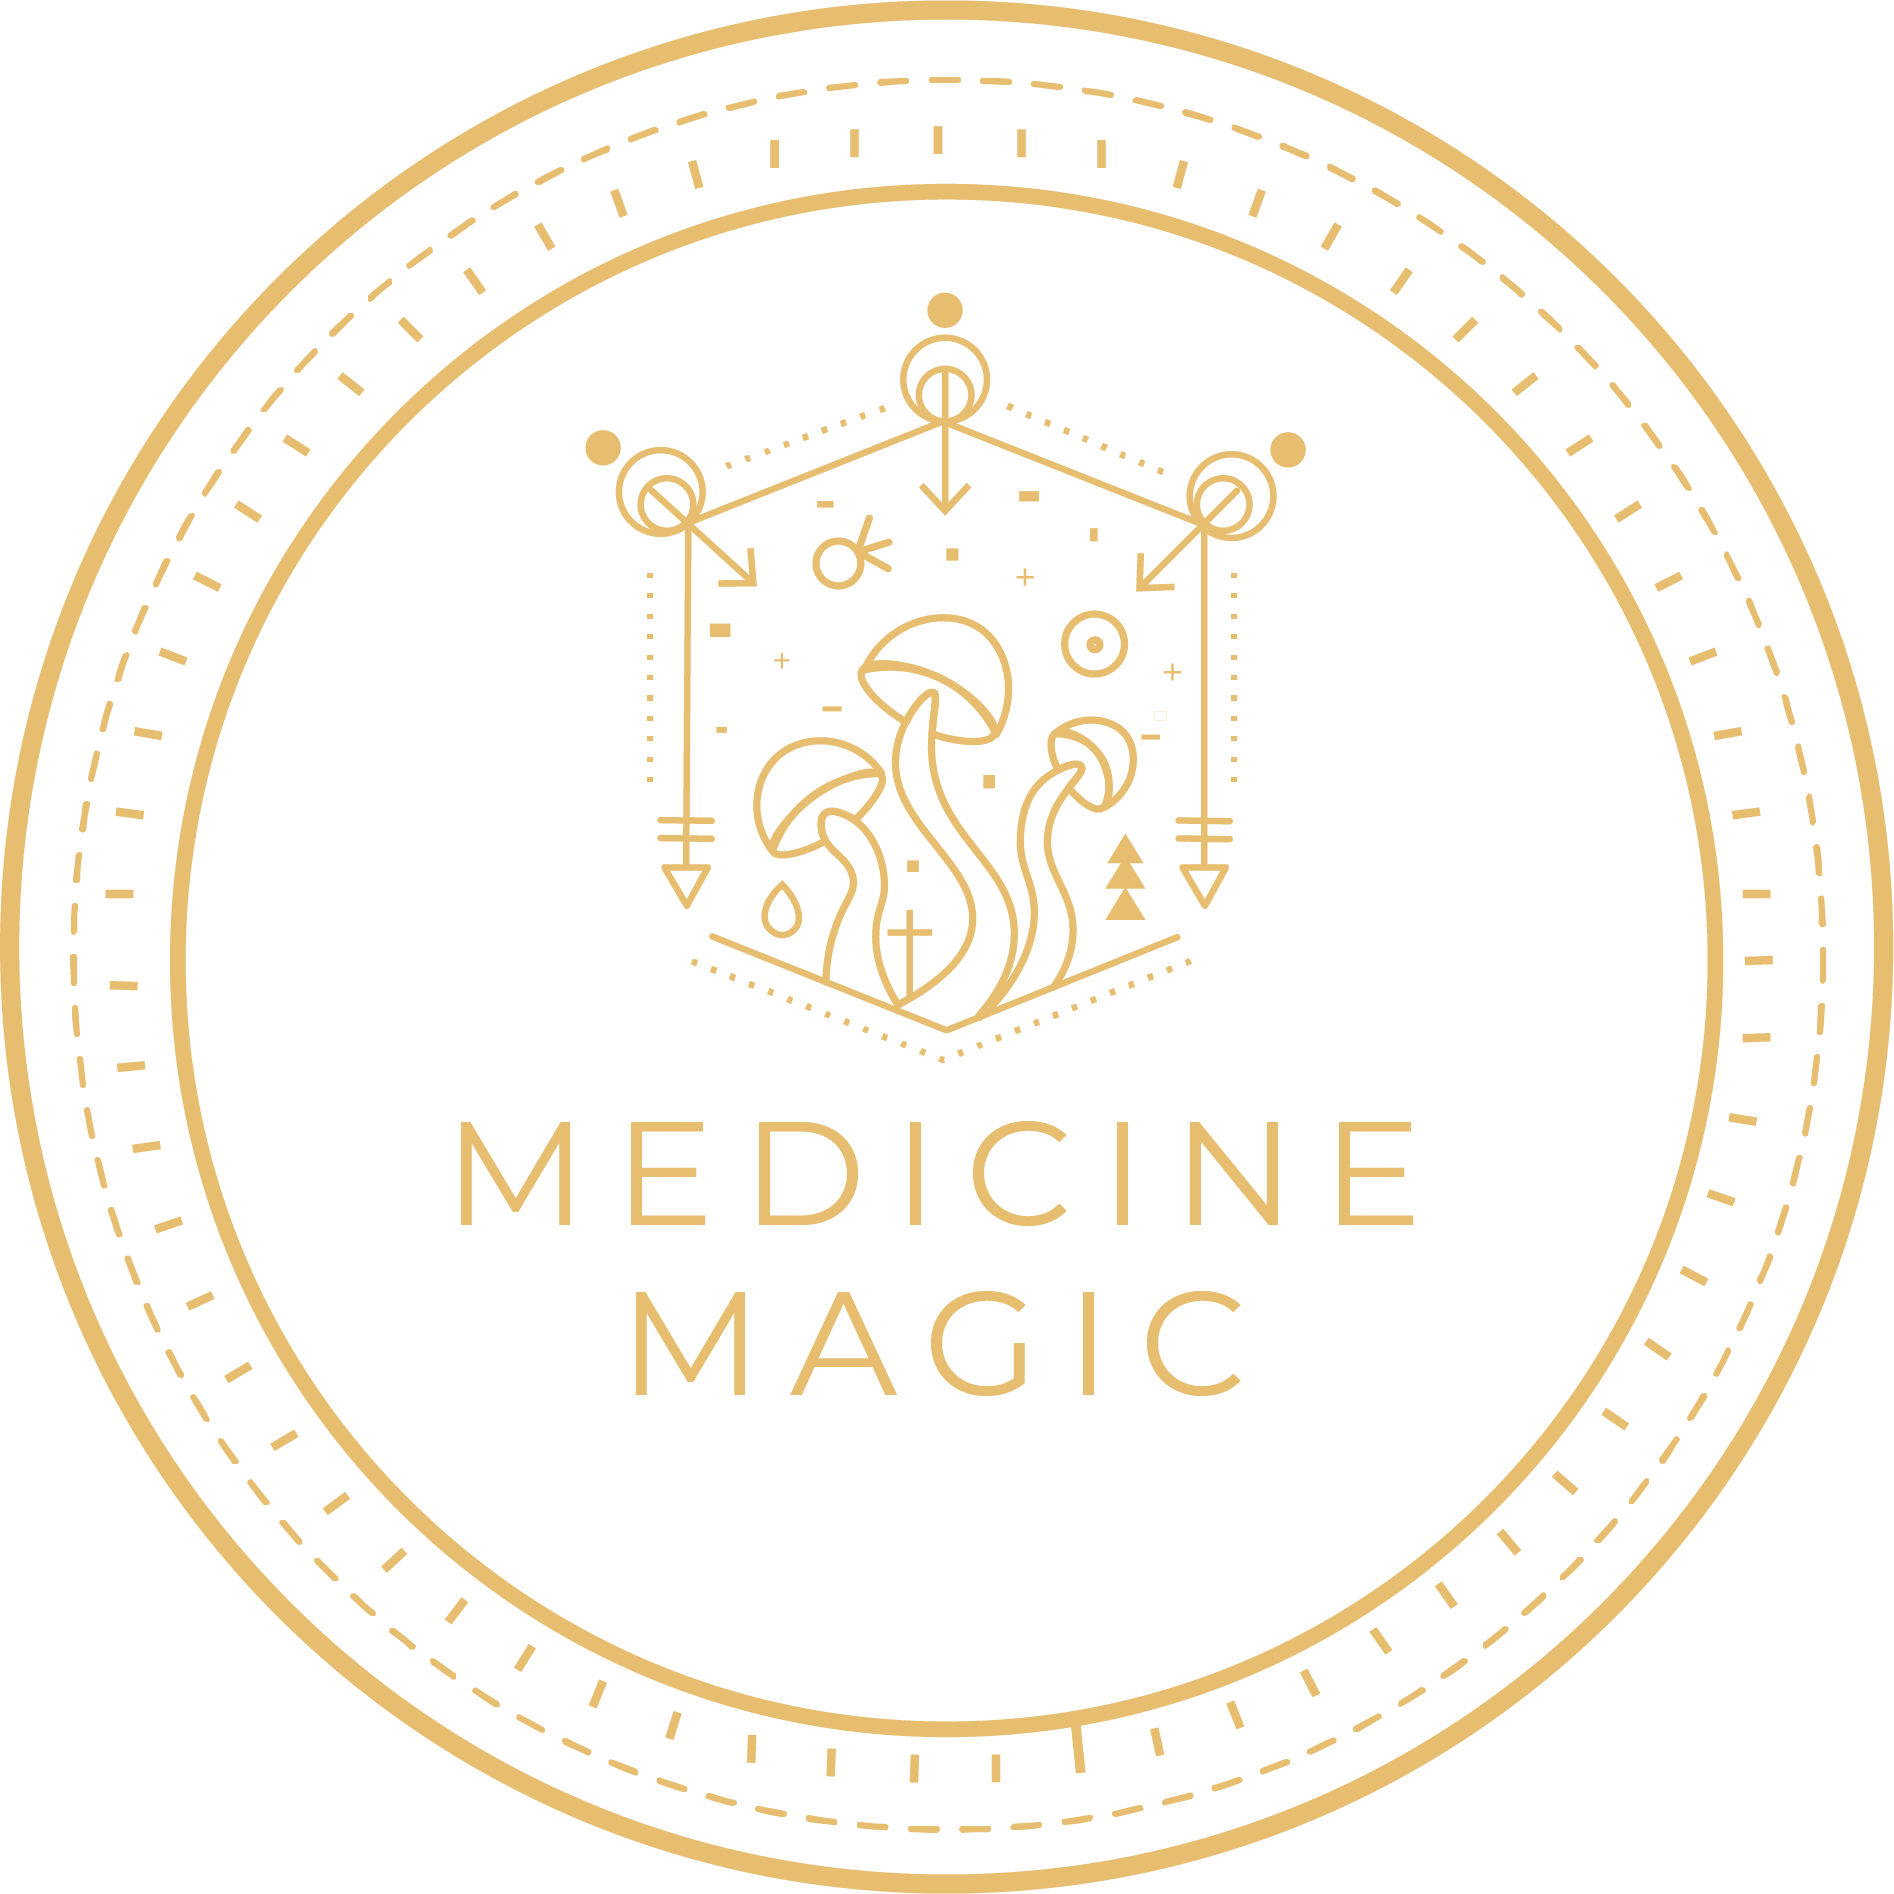 Medicine magic